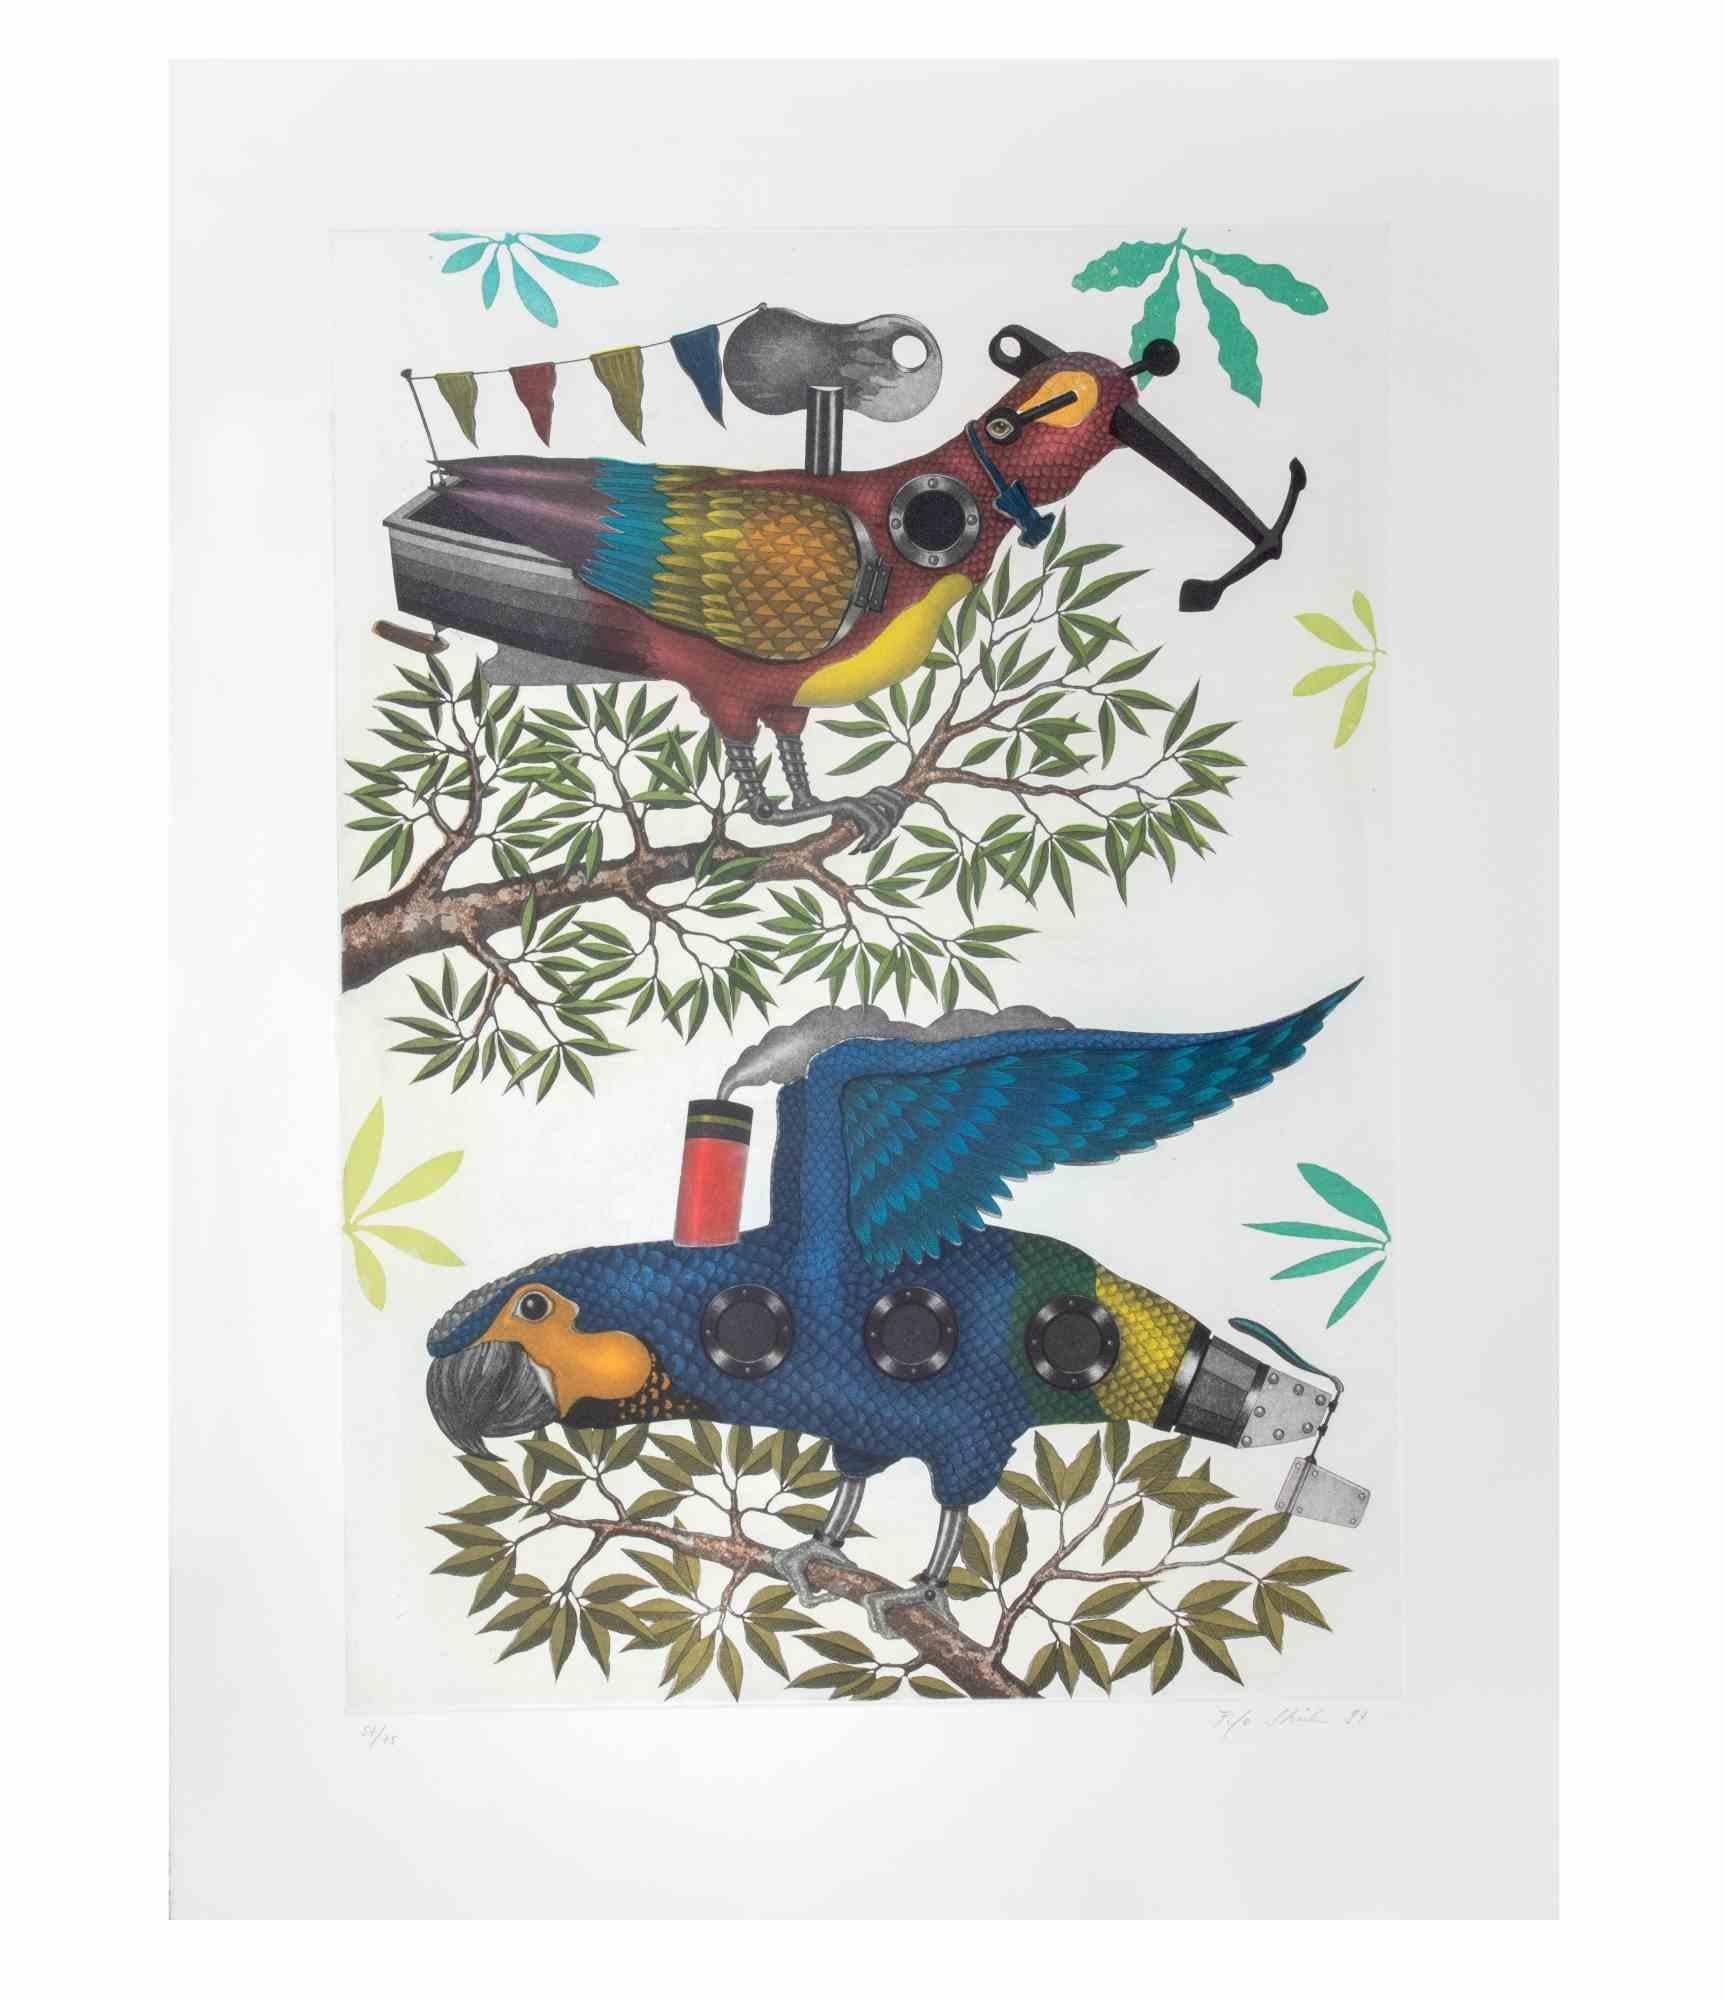 Mechanical Parrots ist ein zeitgenössisches Kunstwerk des Künstlers Fifo Stricker aus dem Jahr 1997.

Gemischte farbige Aquatinta und Radierung. 

Vom Künstler am rechten unteren Rand handsigniert und datiert.

Am linken unteren Rand nummeriert.